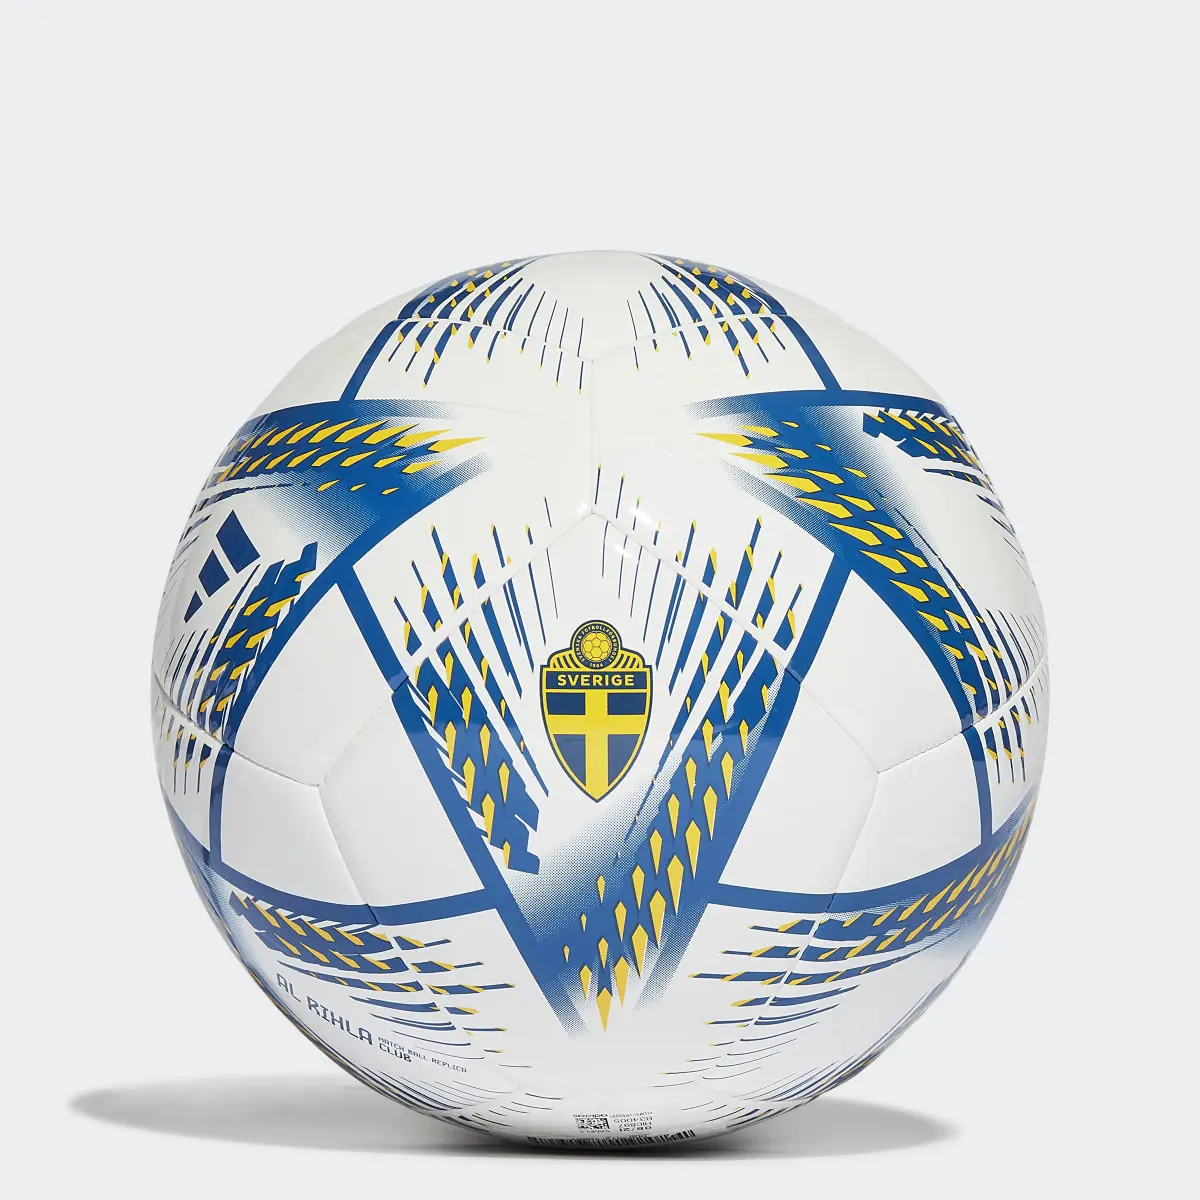 Adidas Al Rihla Sweden Club Football. 1